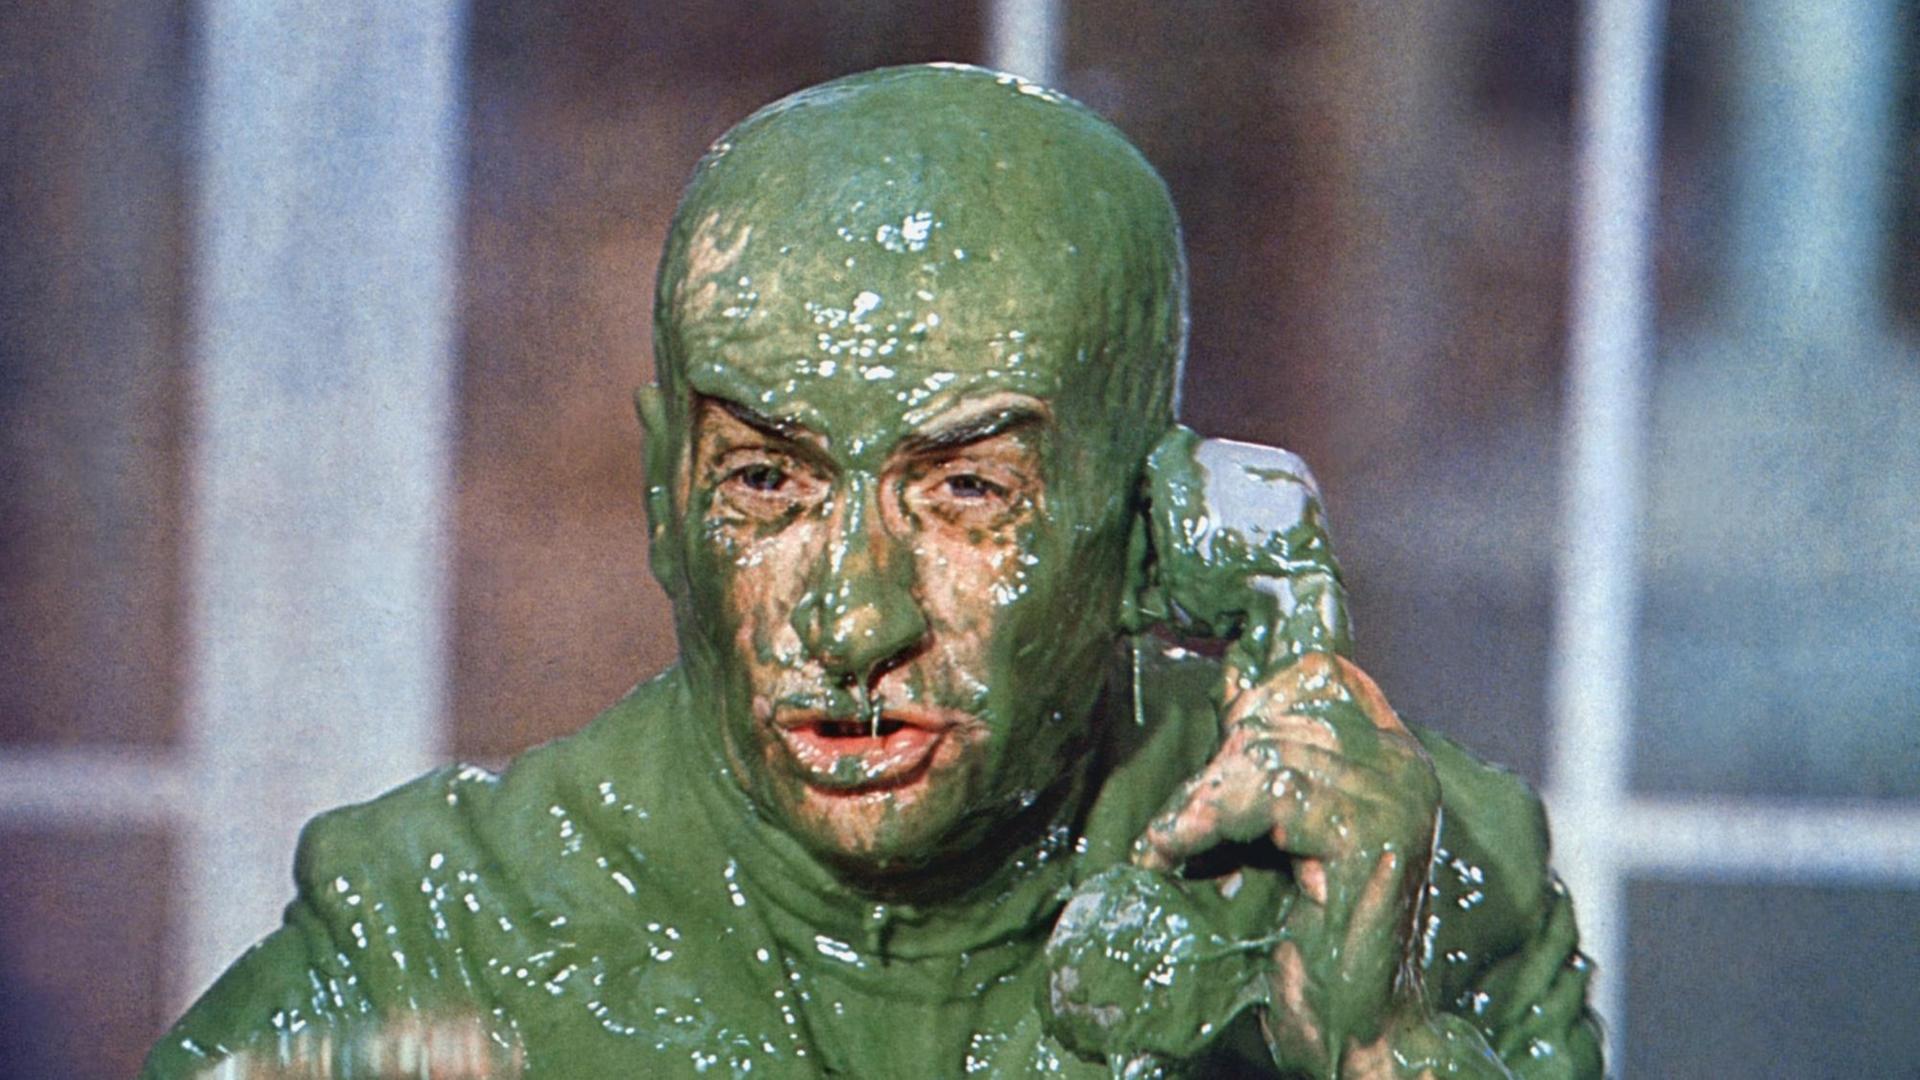 Der Schauspieler Louisde Funes versucht in einer Filmszene, ganz bedeckt von grünem Schleim, zu telefonieren.